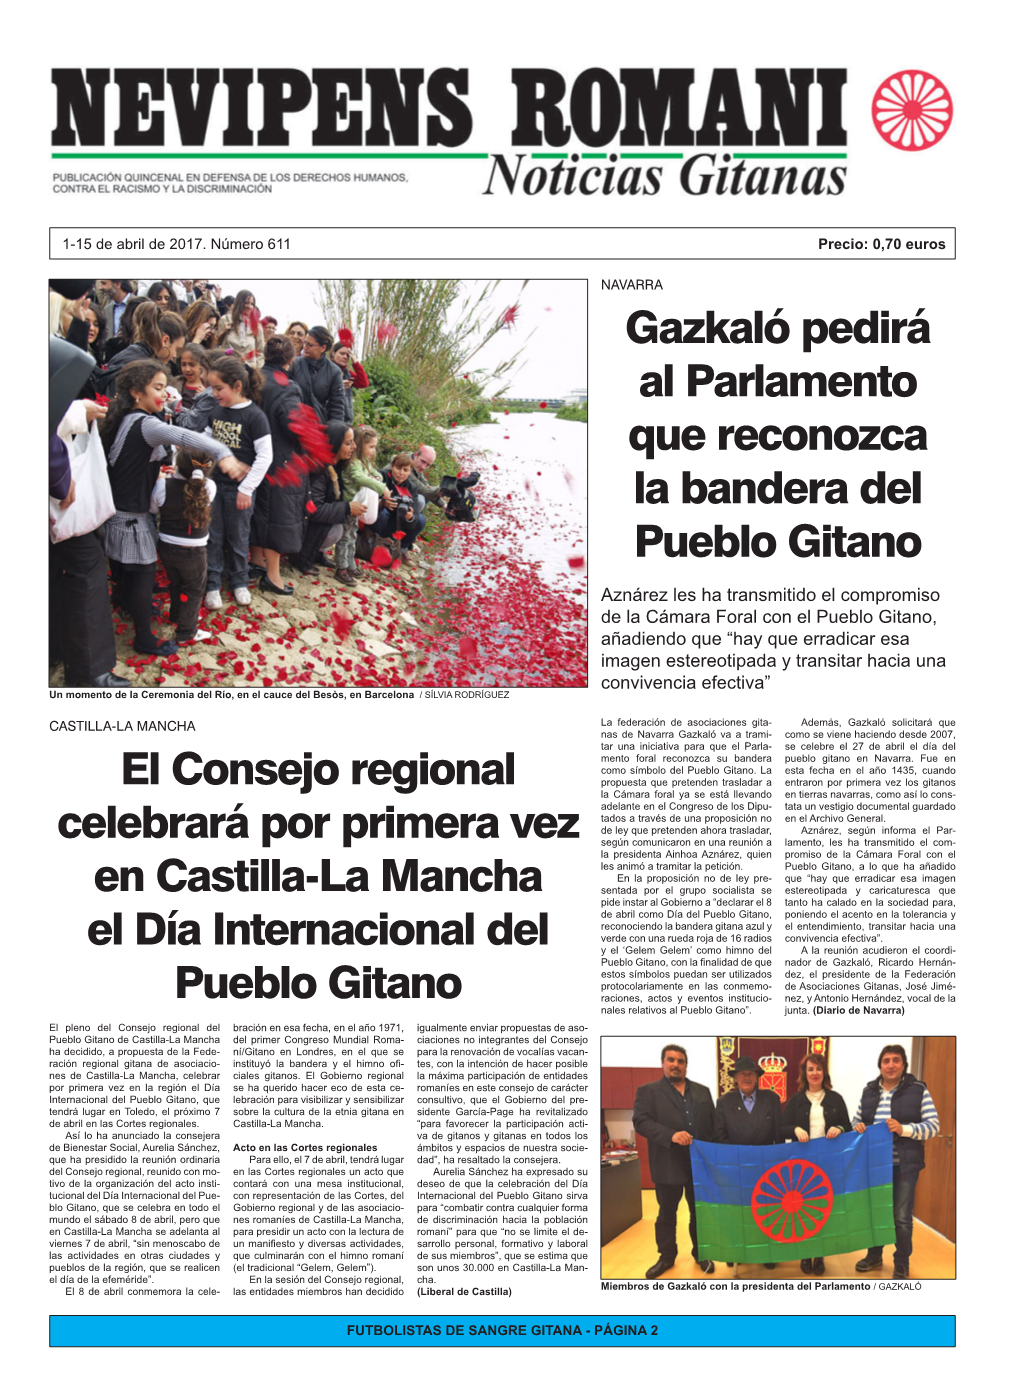 El Consejo Regional Celebrará Por Primera Vez En Castilla-La Mancha El Día Internacional Del Pueblo Gitano Gazkaló Pedirá Al